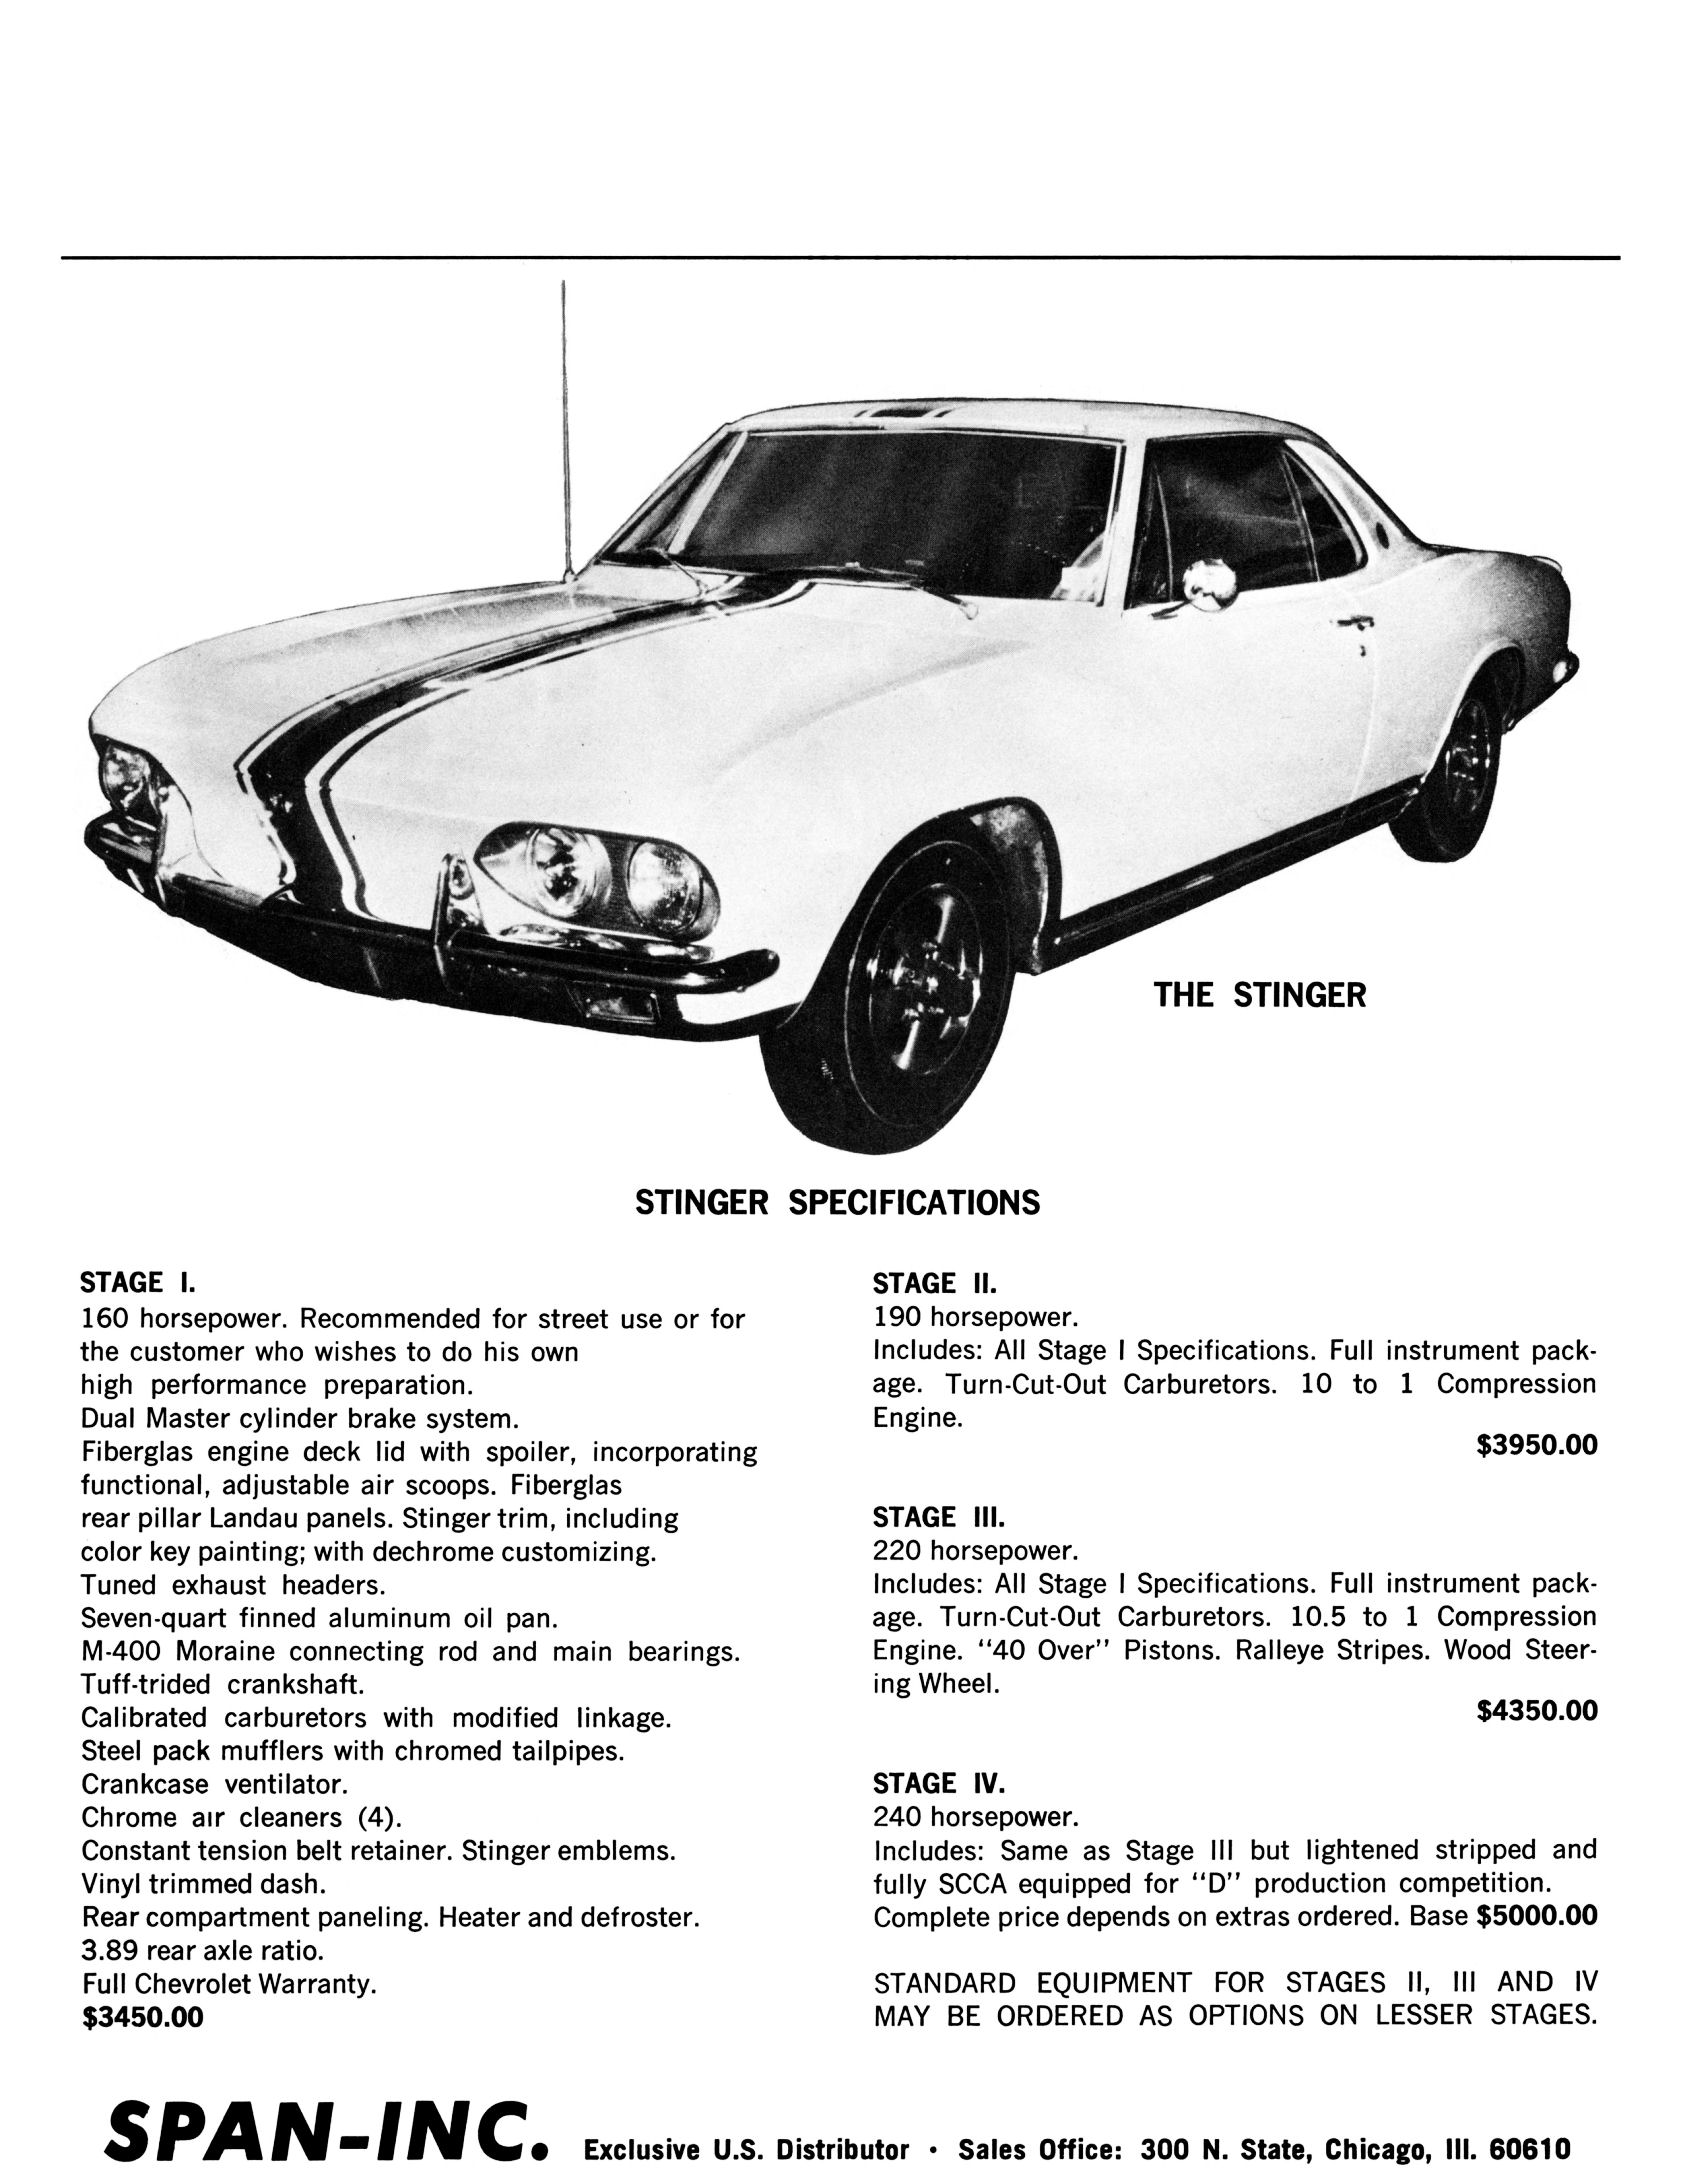 1967_Chevrolet_Yenko_Sportscars-02